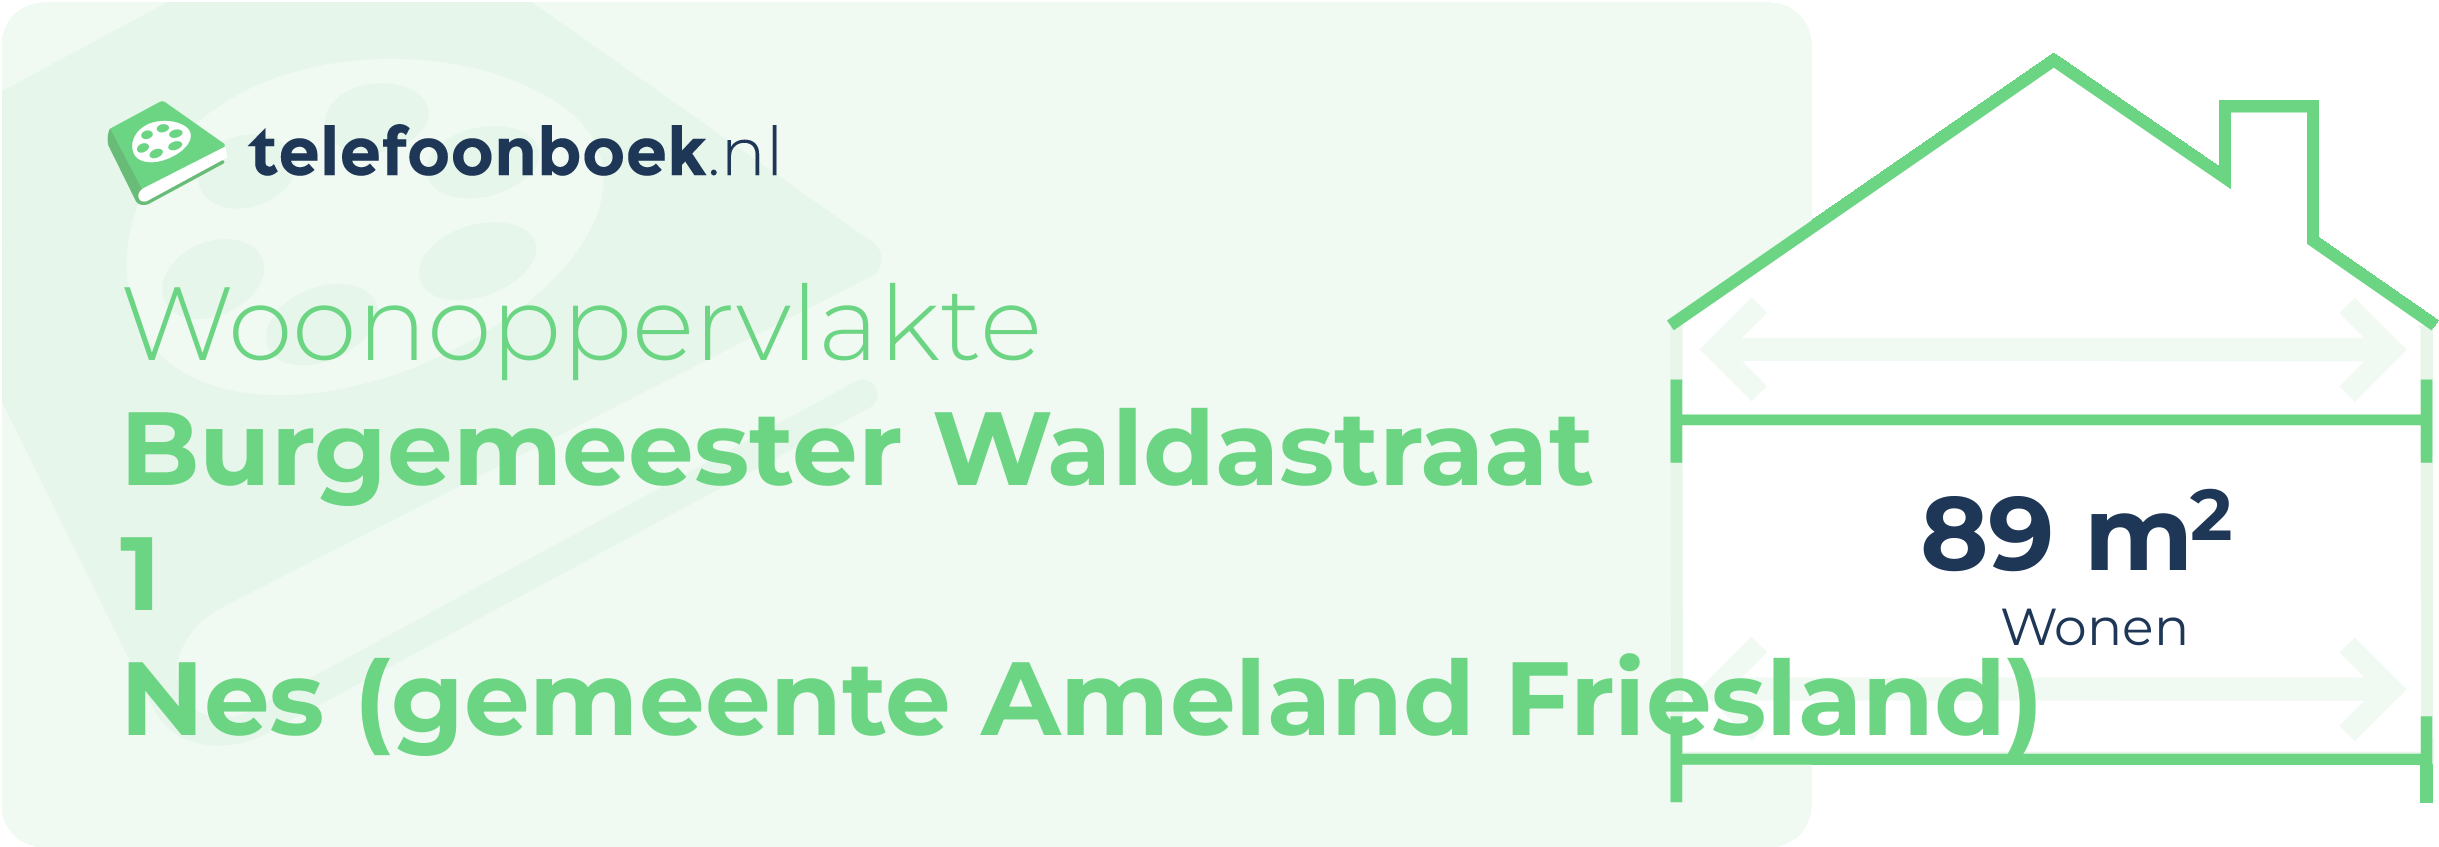 Woonoppervlakte Burgemeester Waldastraat 1 Nes (gemeente Ameland Friesland)